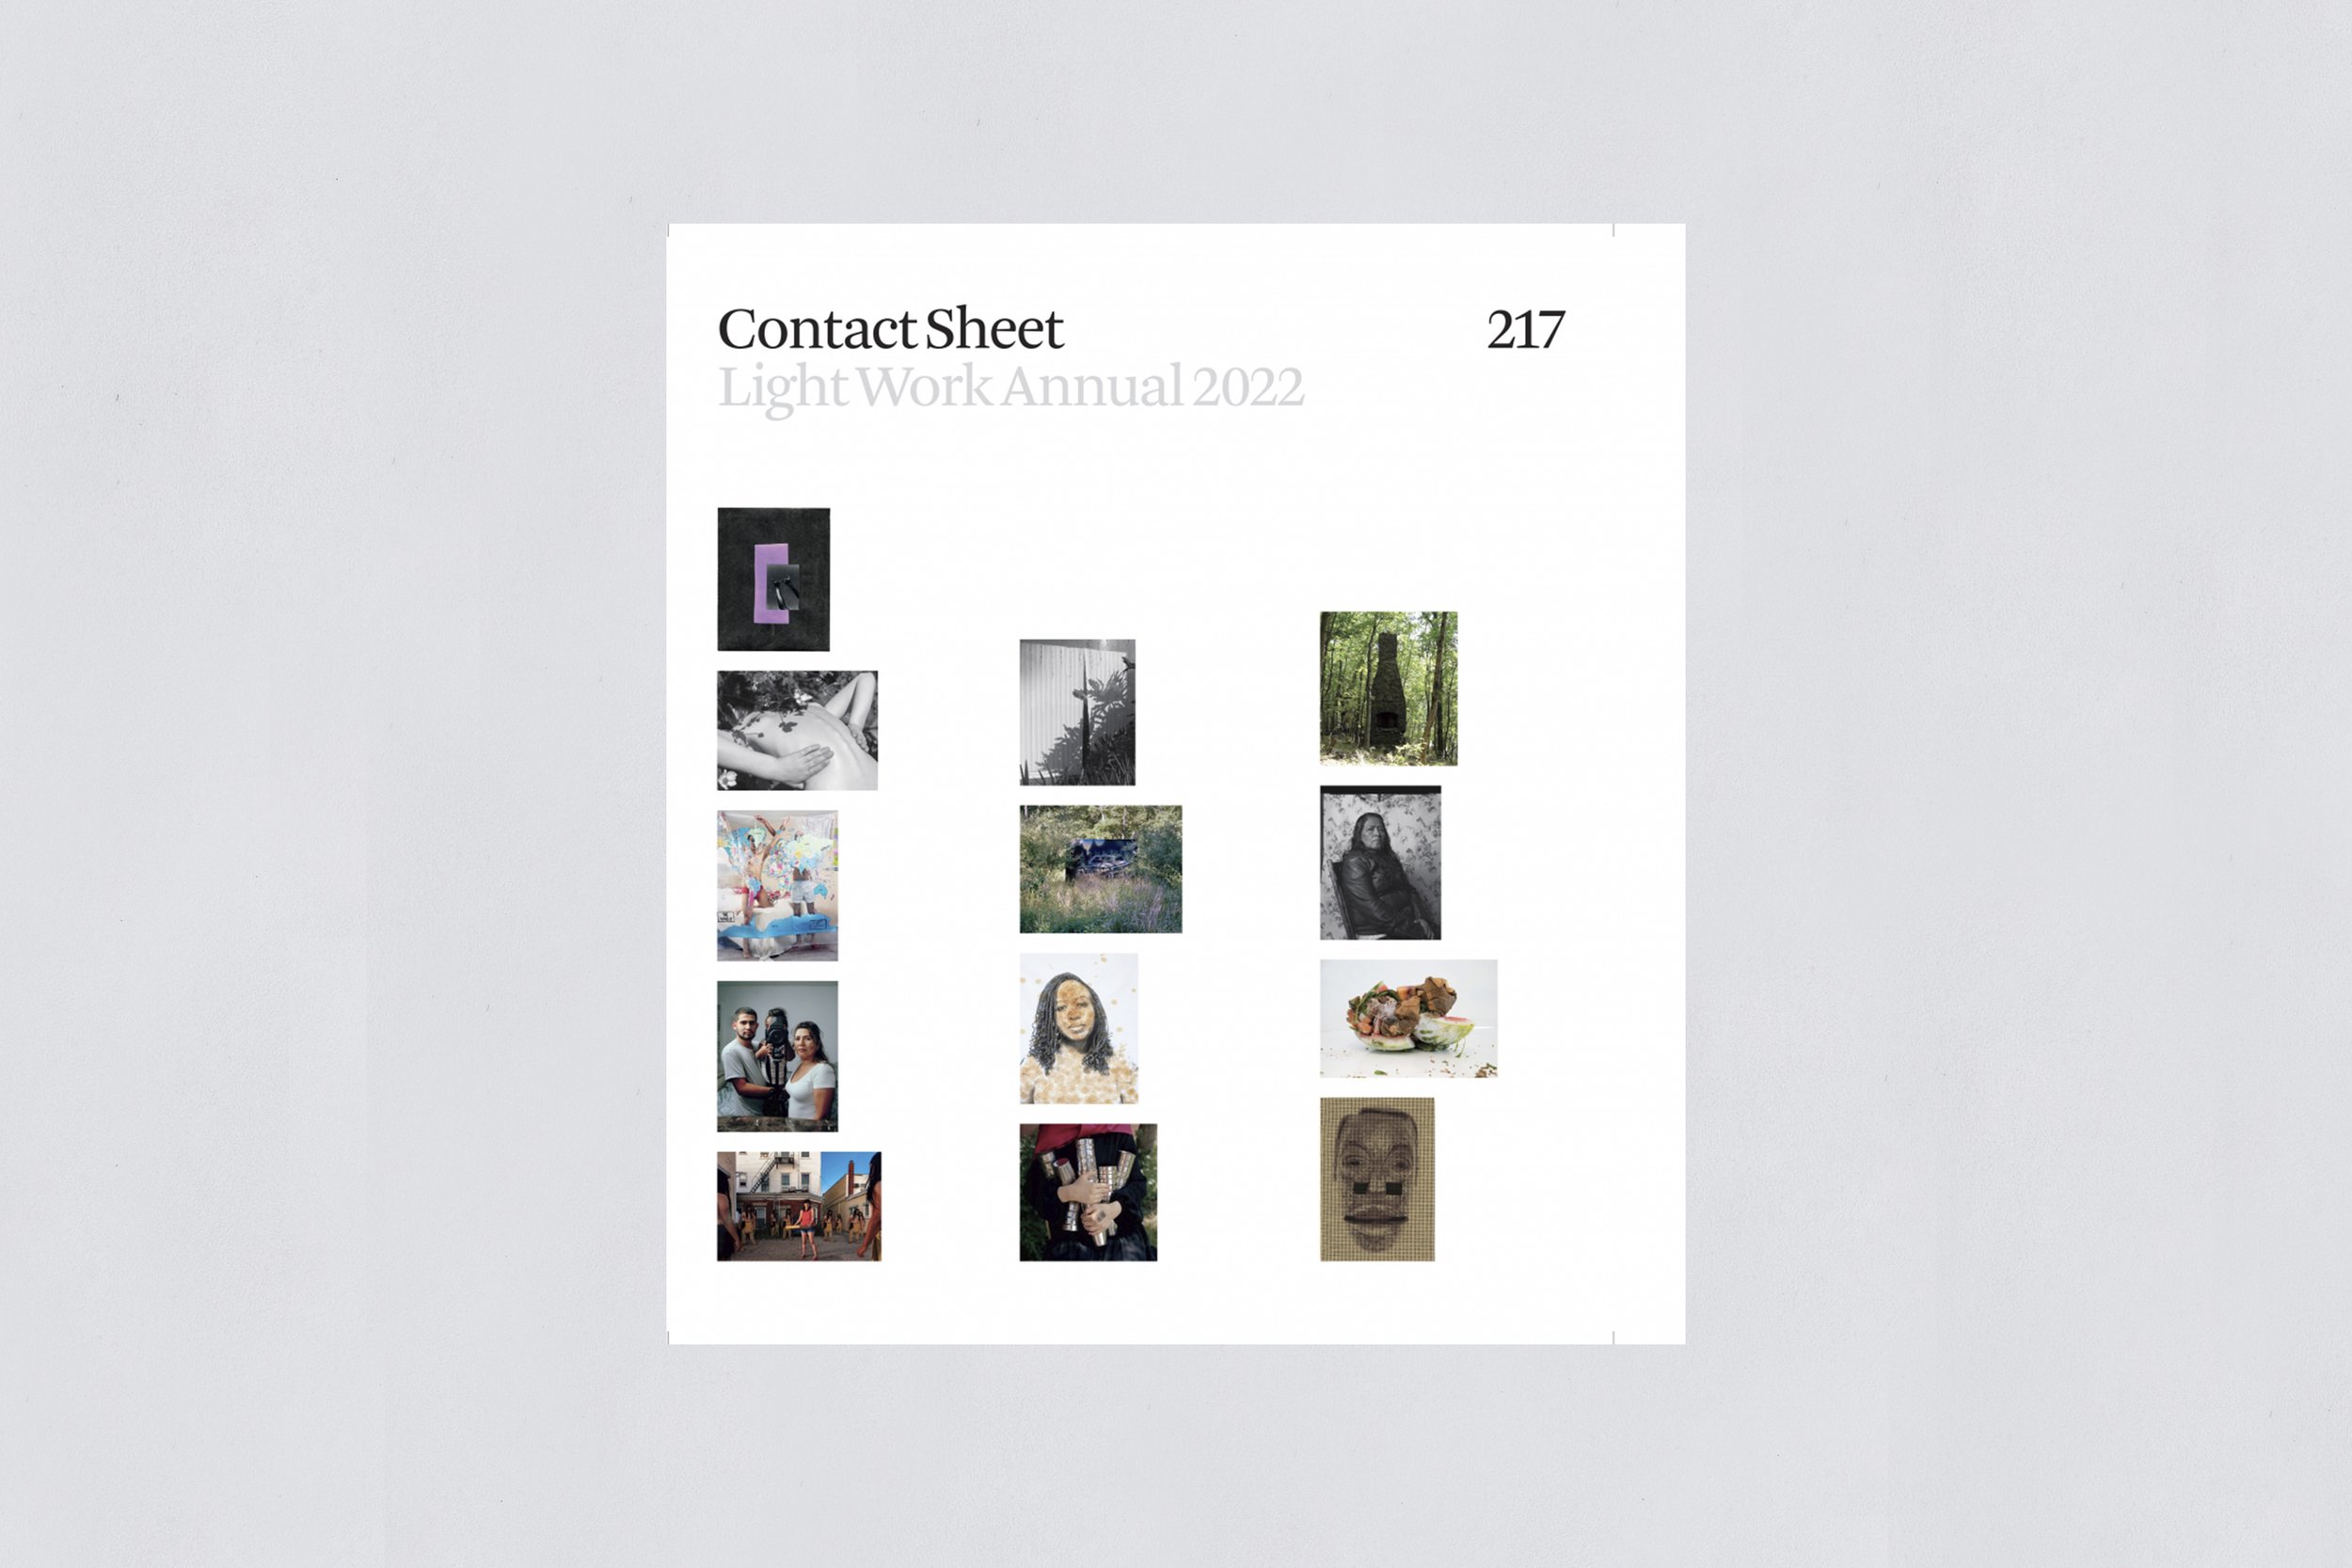 Contact Sheet 217: Light Work Annual 2022